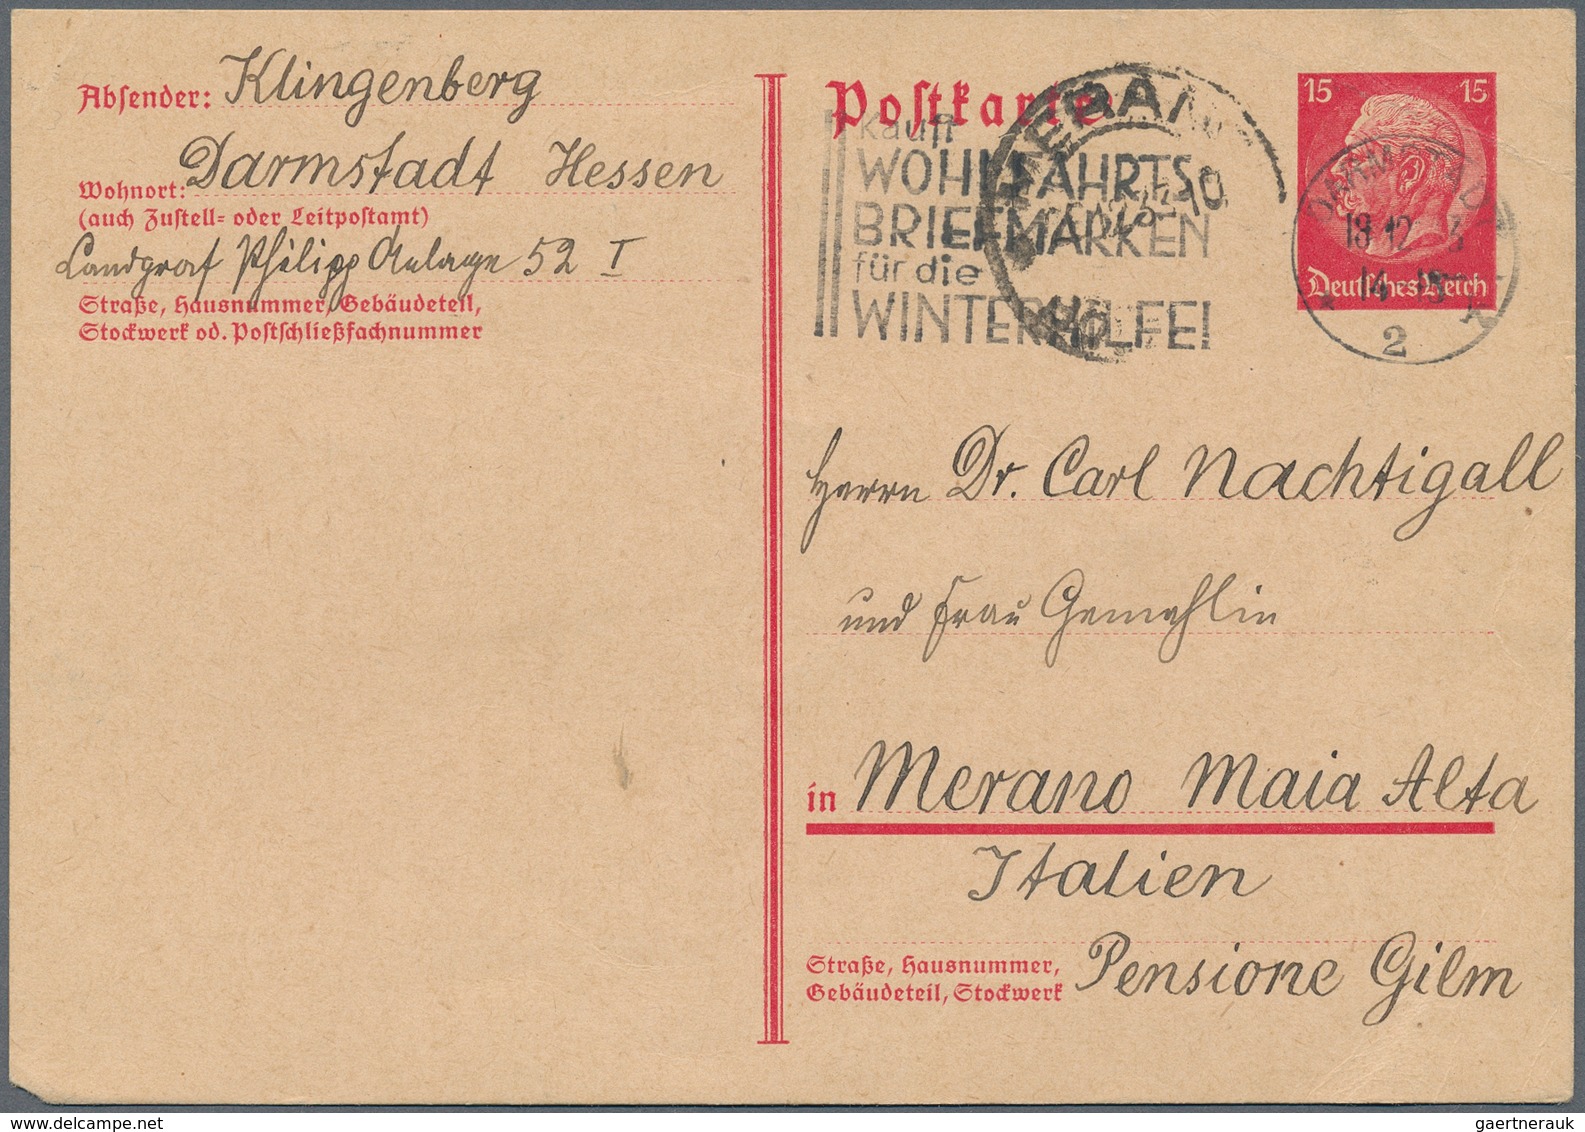 31431 Deutsches Reich: 1872/1945, umfangreiche Partie von ca. 400 Belegen in großer Vielfalt, einige auch